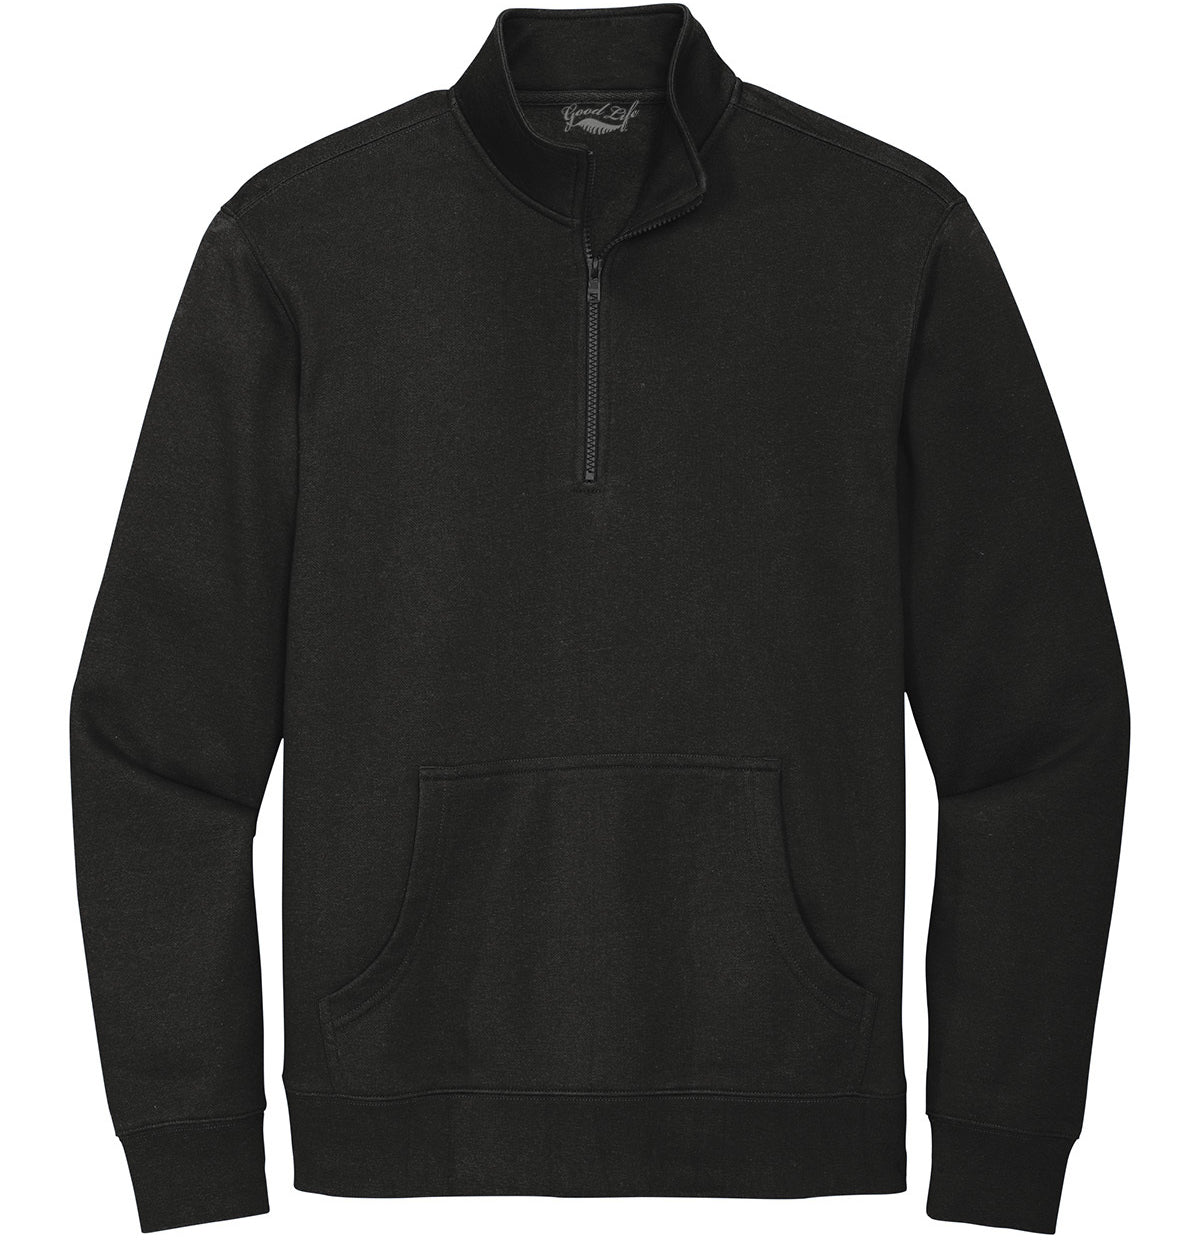 Joseph Solid Black Quarter Zip, Men's Pullover